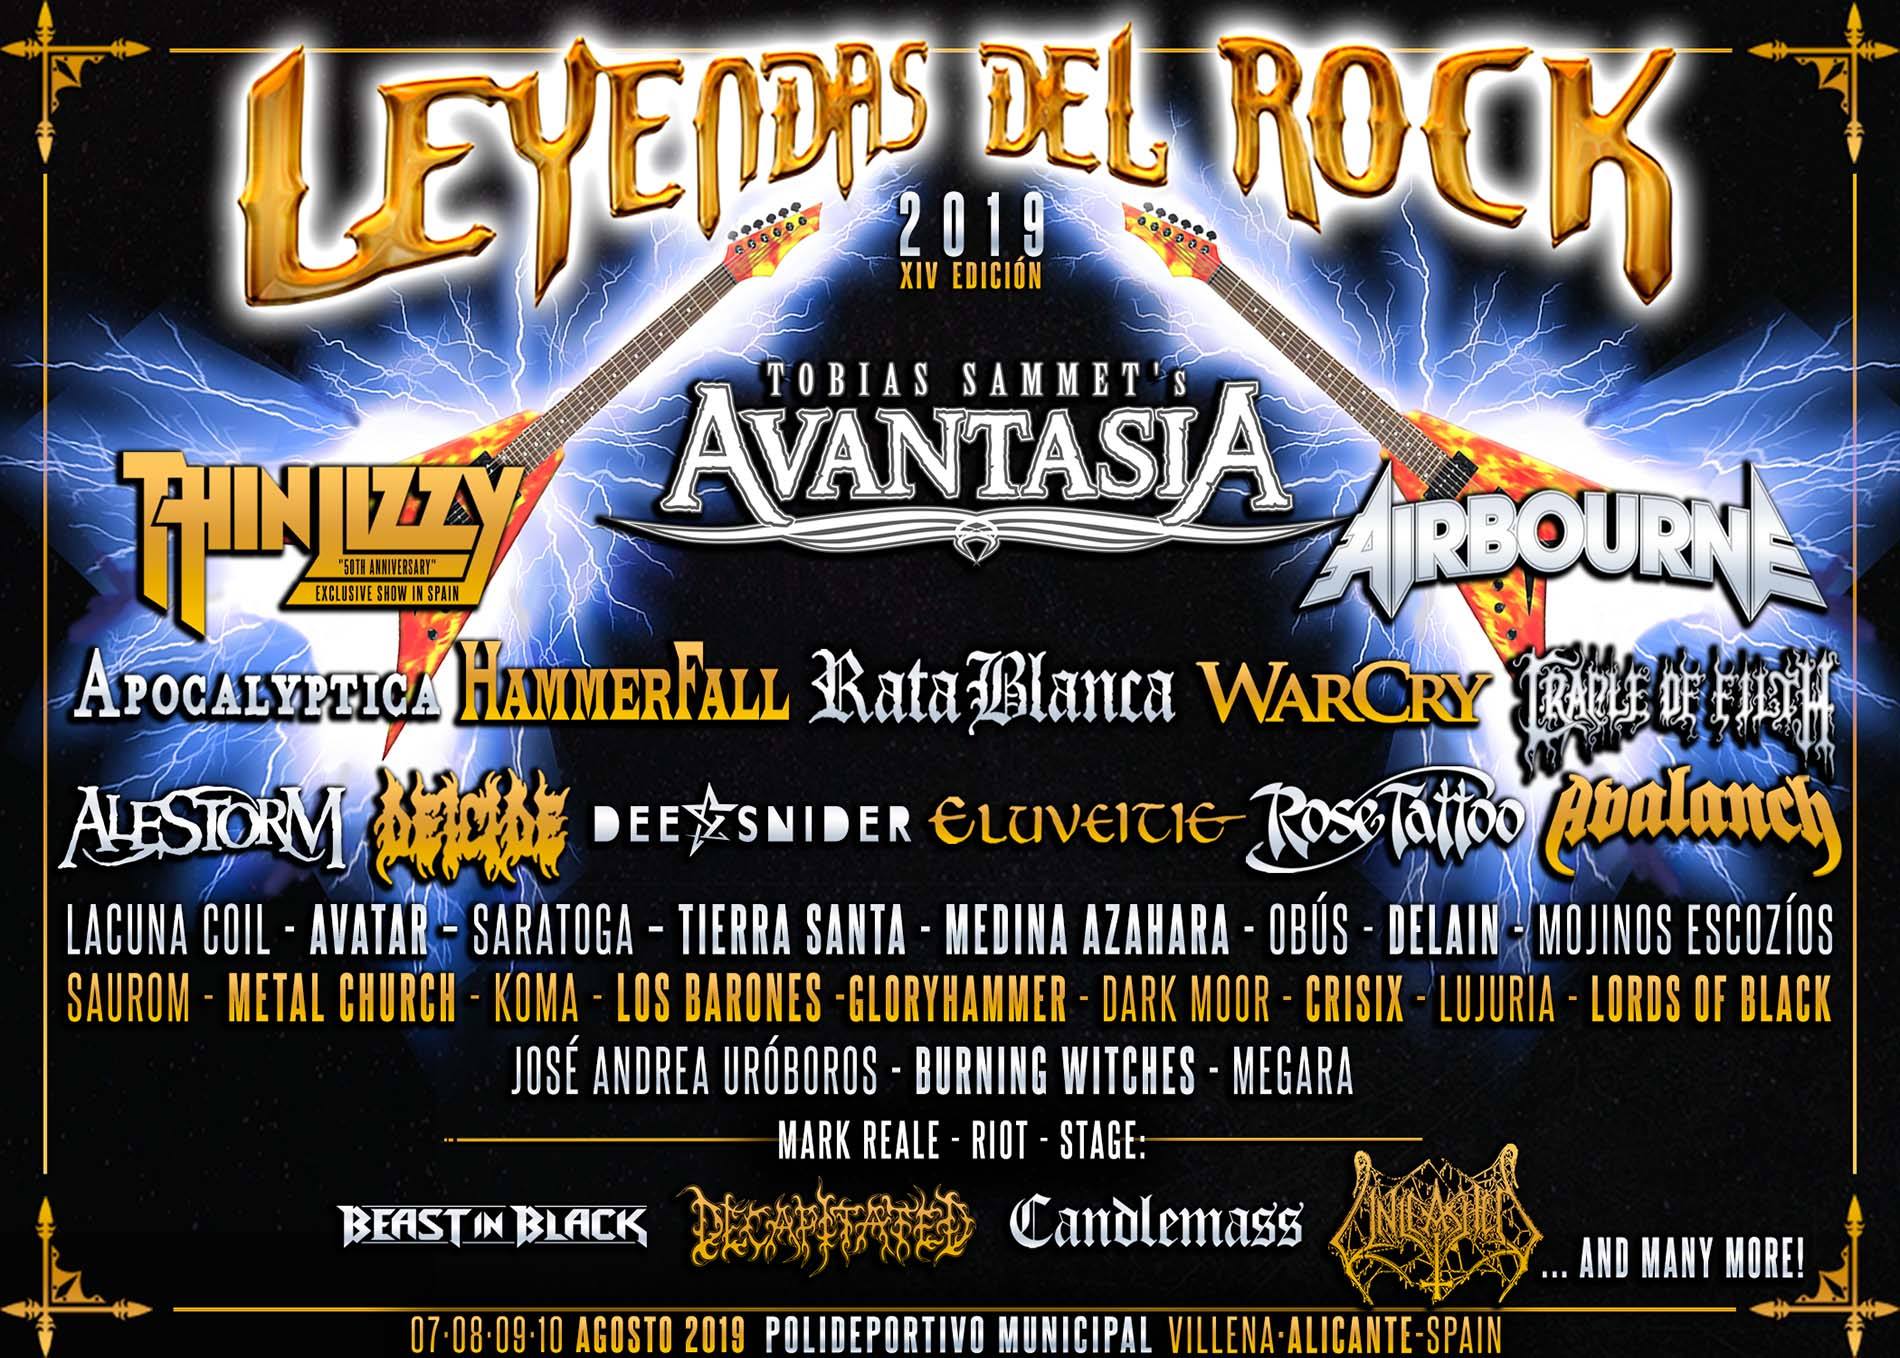 leyendas del rock festival valencia 2019 verano